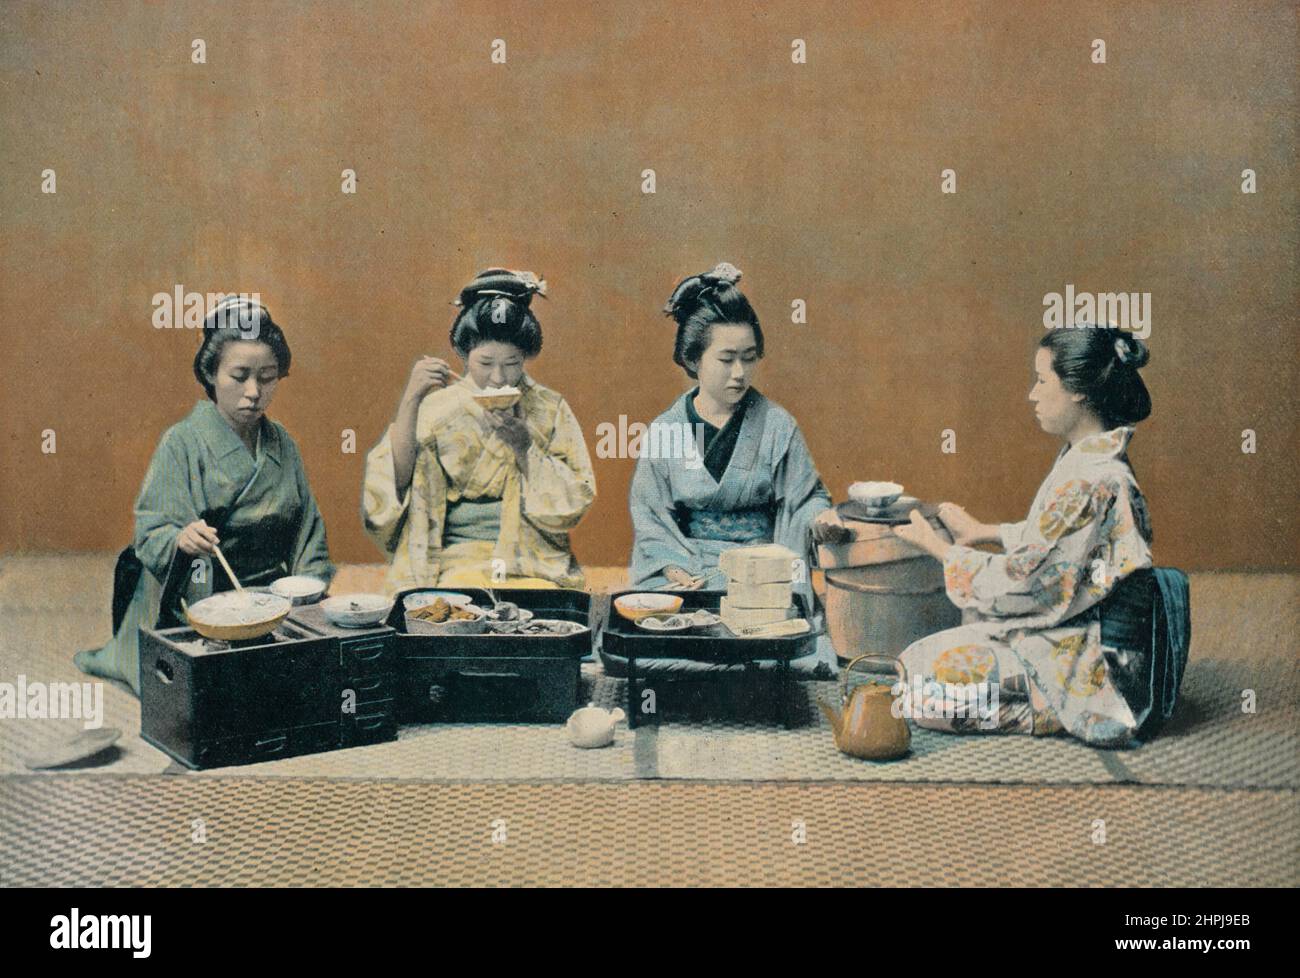 UNE SALLE, EINE KRIPPE. Au Japon III 1895 - 1900 (6) - 19. Jahrhundert französischer Farbfotografiedruck Stockfoto